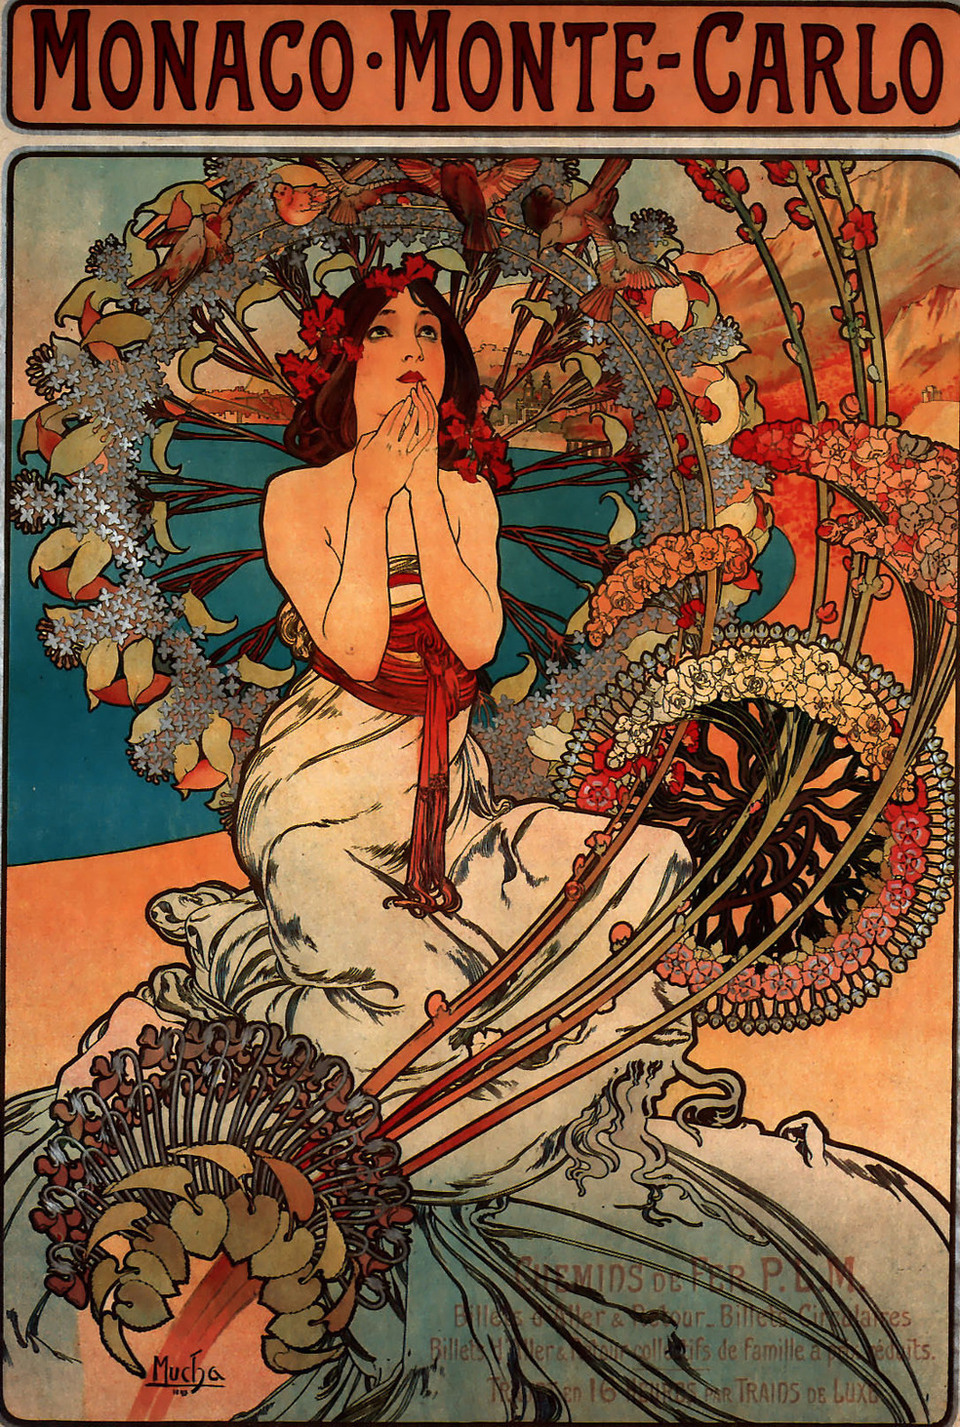 About the Art Nouveau Movement